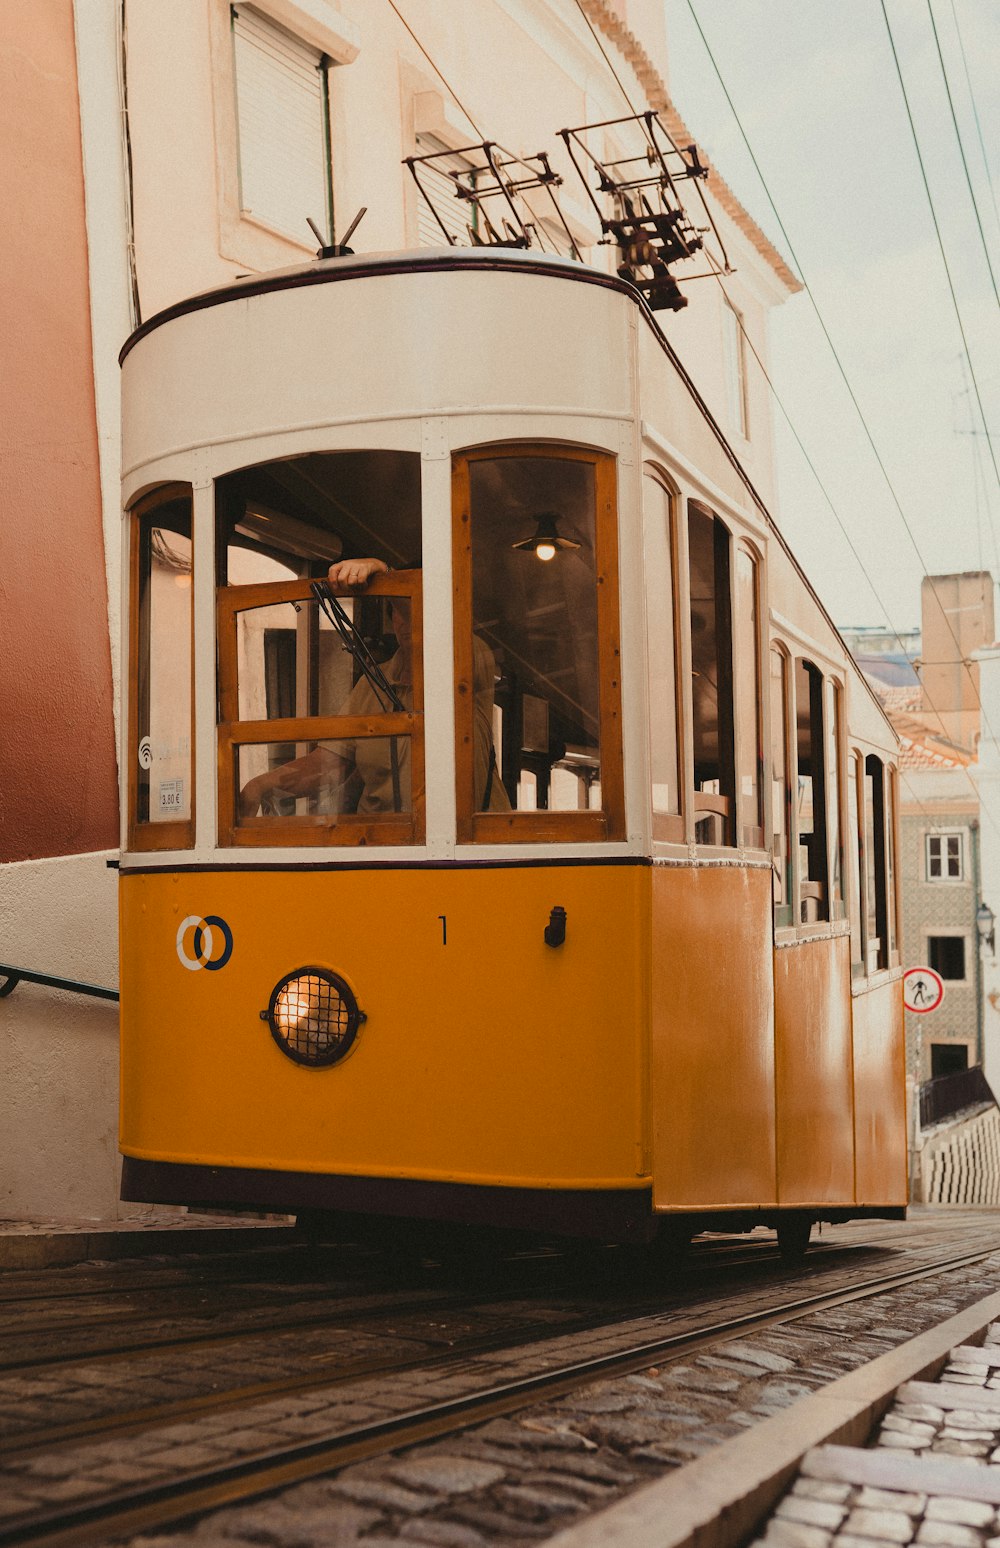 a yellow trolley car